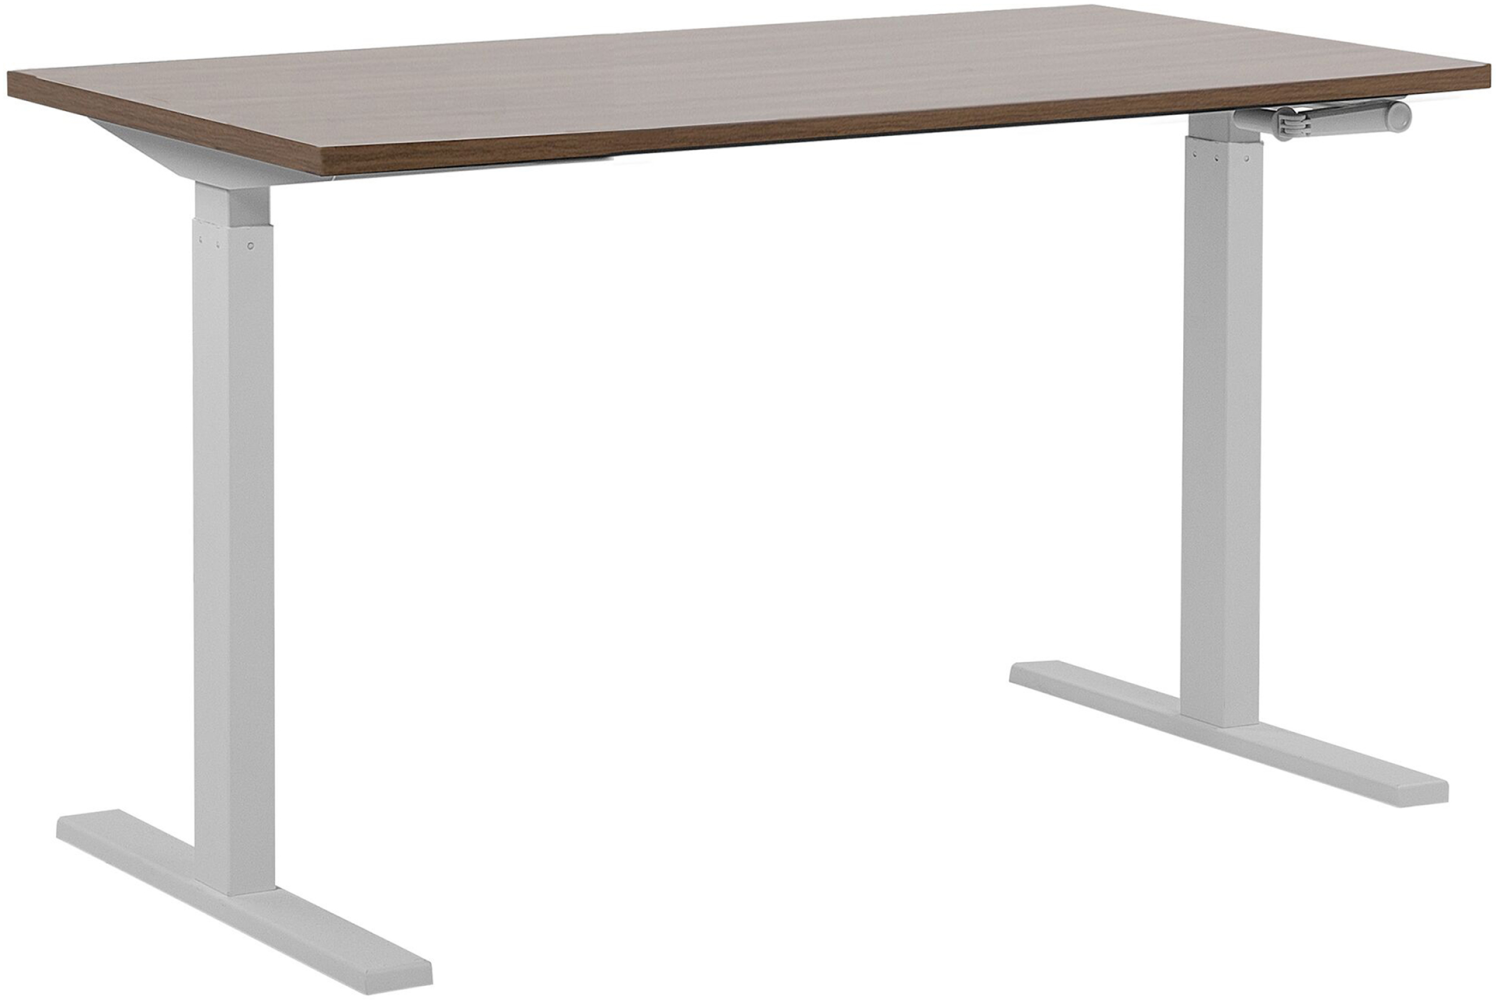 Schreibtisch manuell höhenverstellbar, Spanplatte Braun/ Weiß, 76-116 x 130 x 72 cm Bild 1